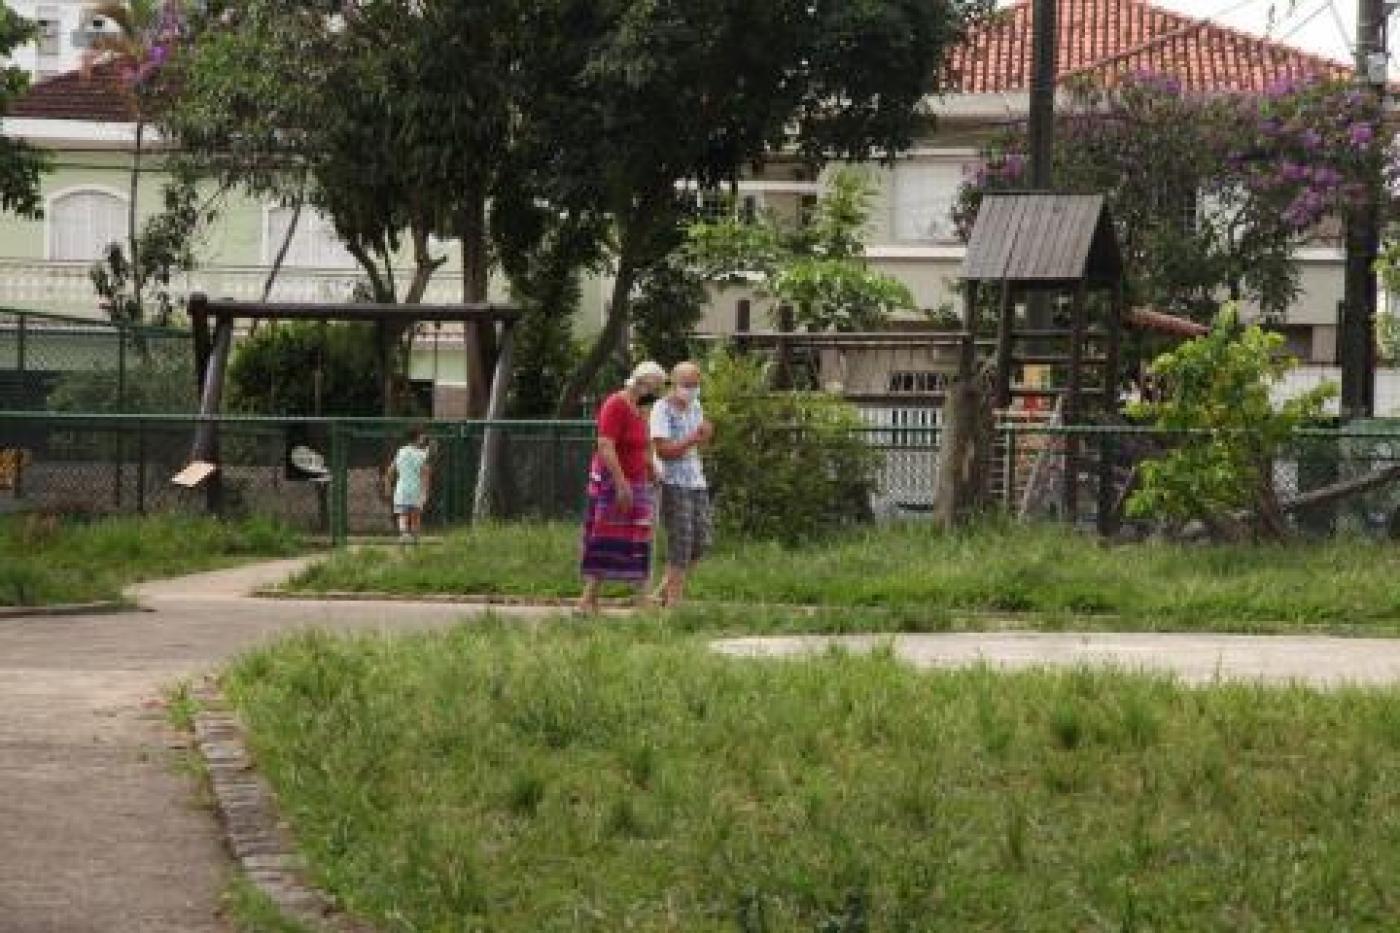 praça com área gramada. Dois idosos caminham. Um playground ao fundo. #paratodosverem